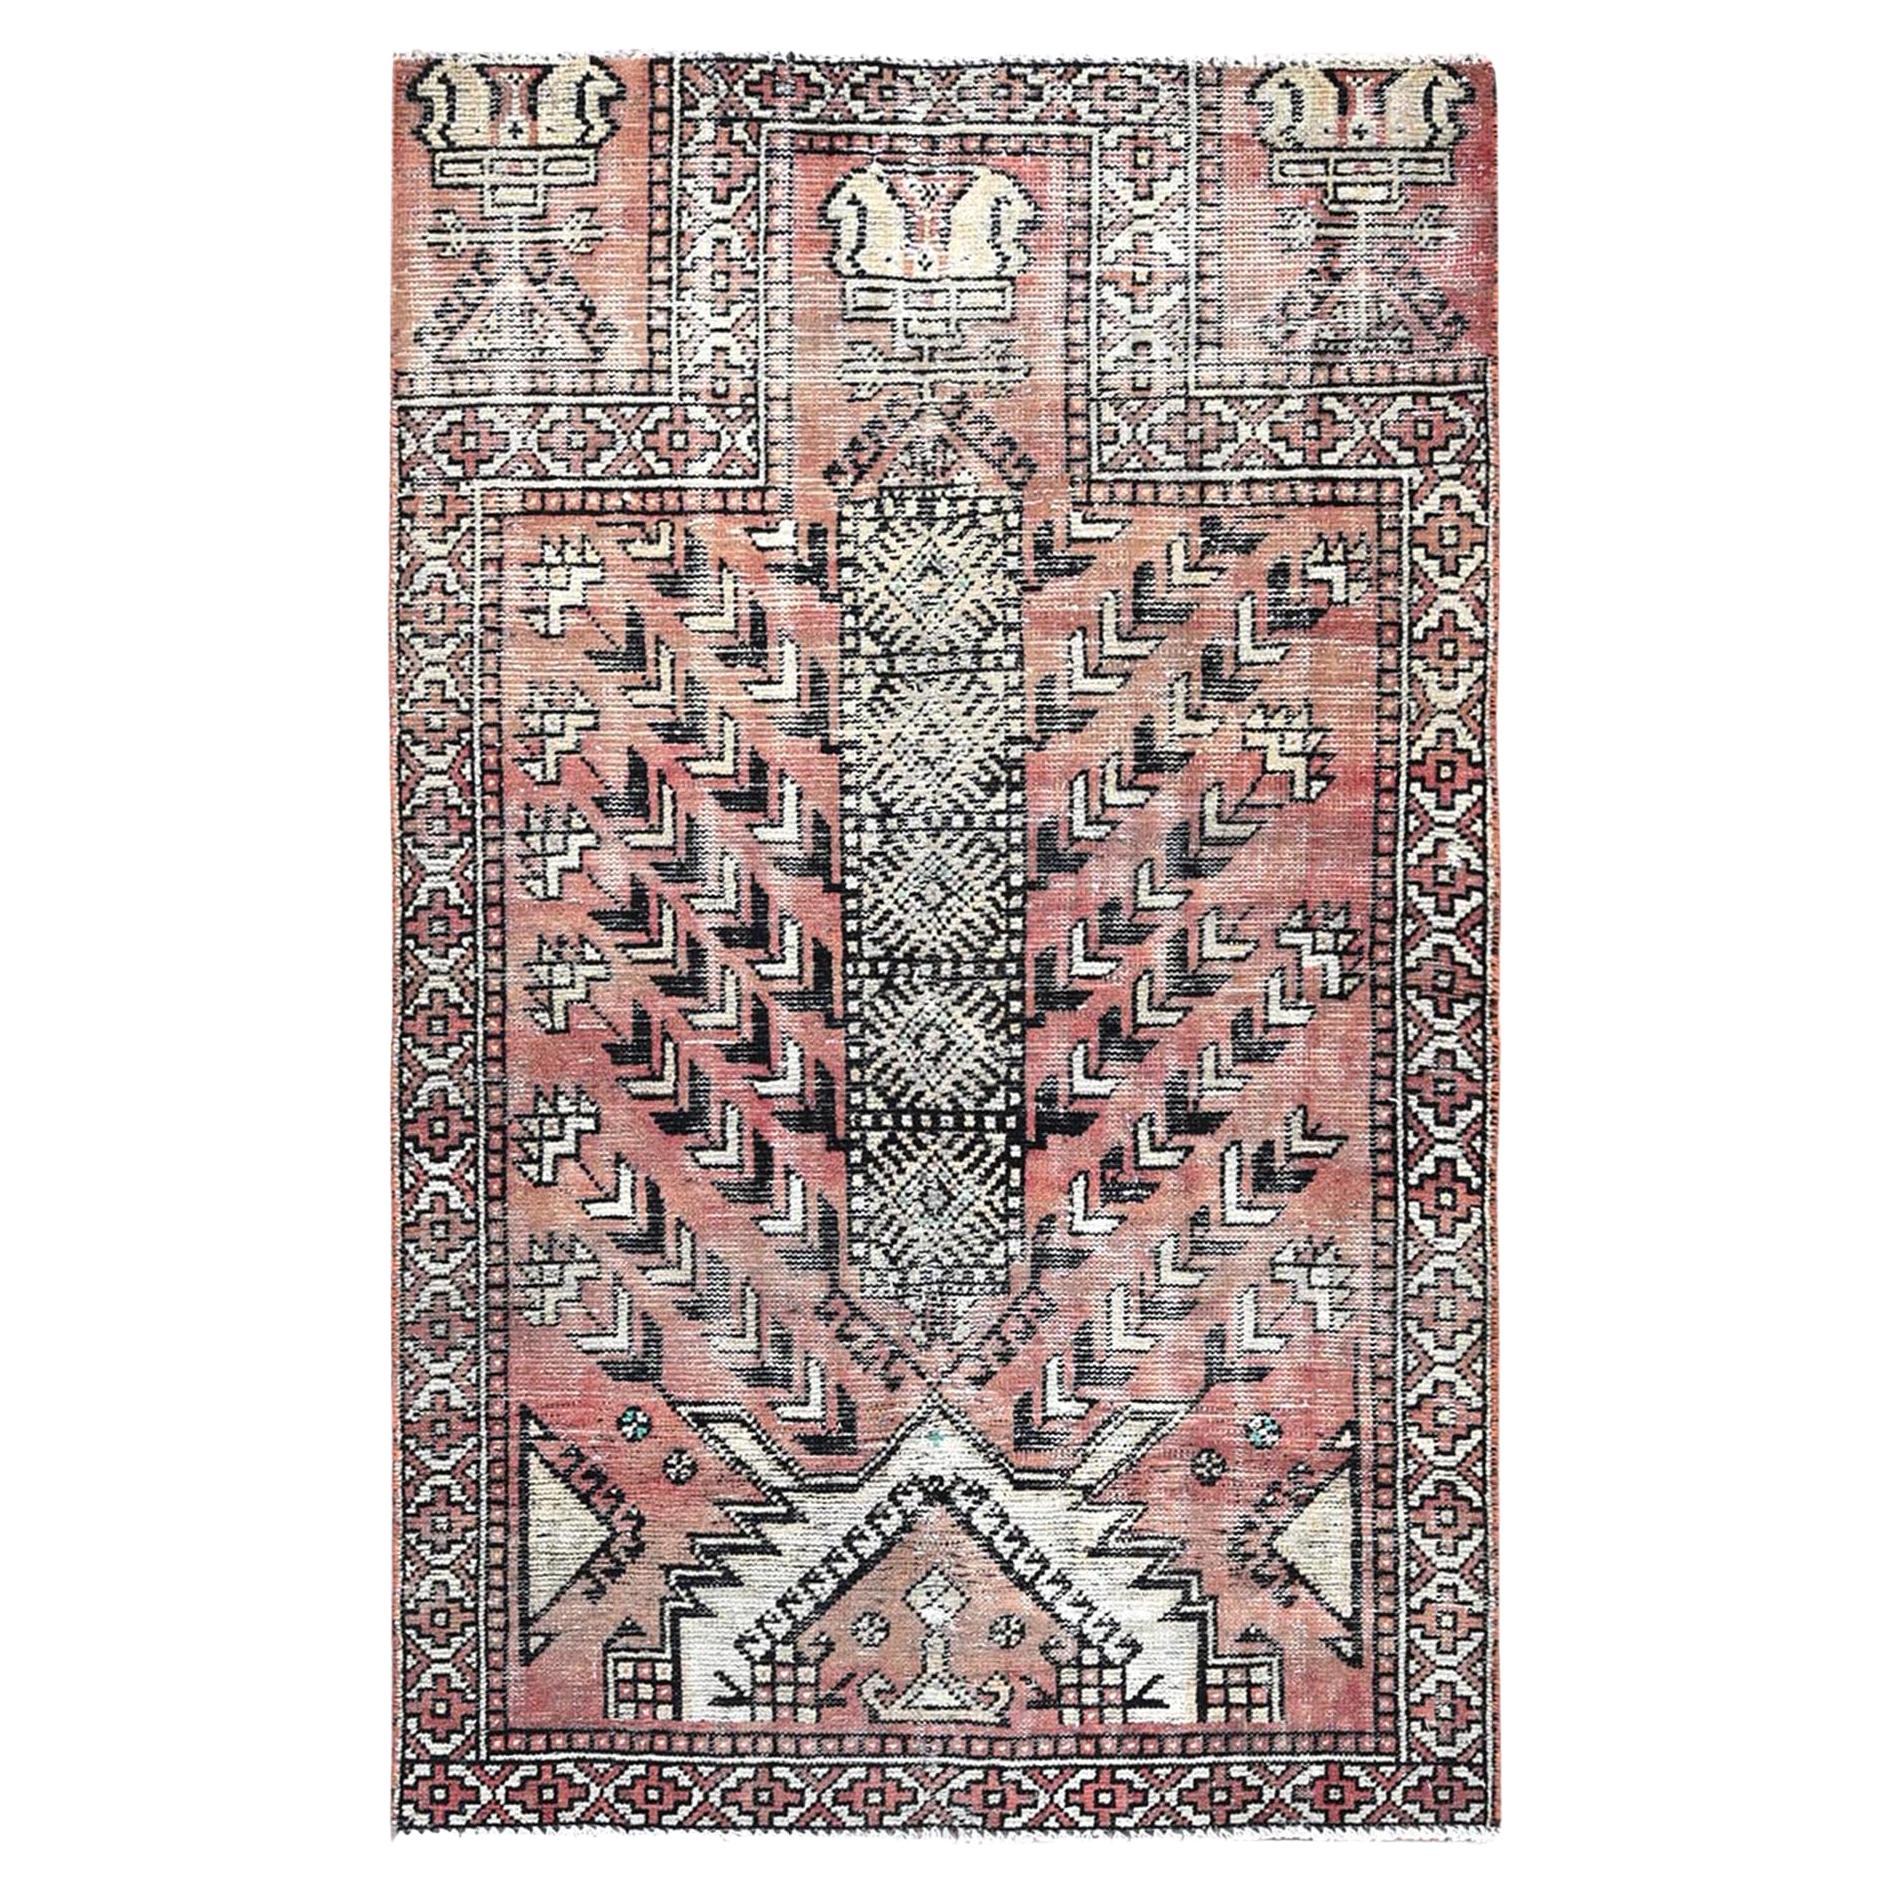 Brown Vintage Persian Baluch Village Design Reine Wolle Handgeknüpft Sauberer Teppich